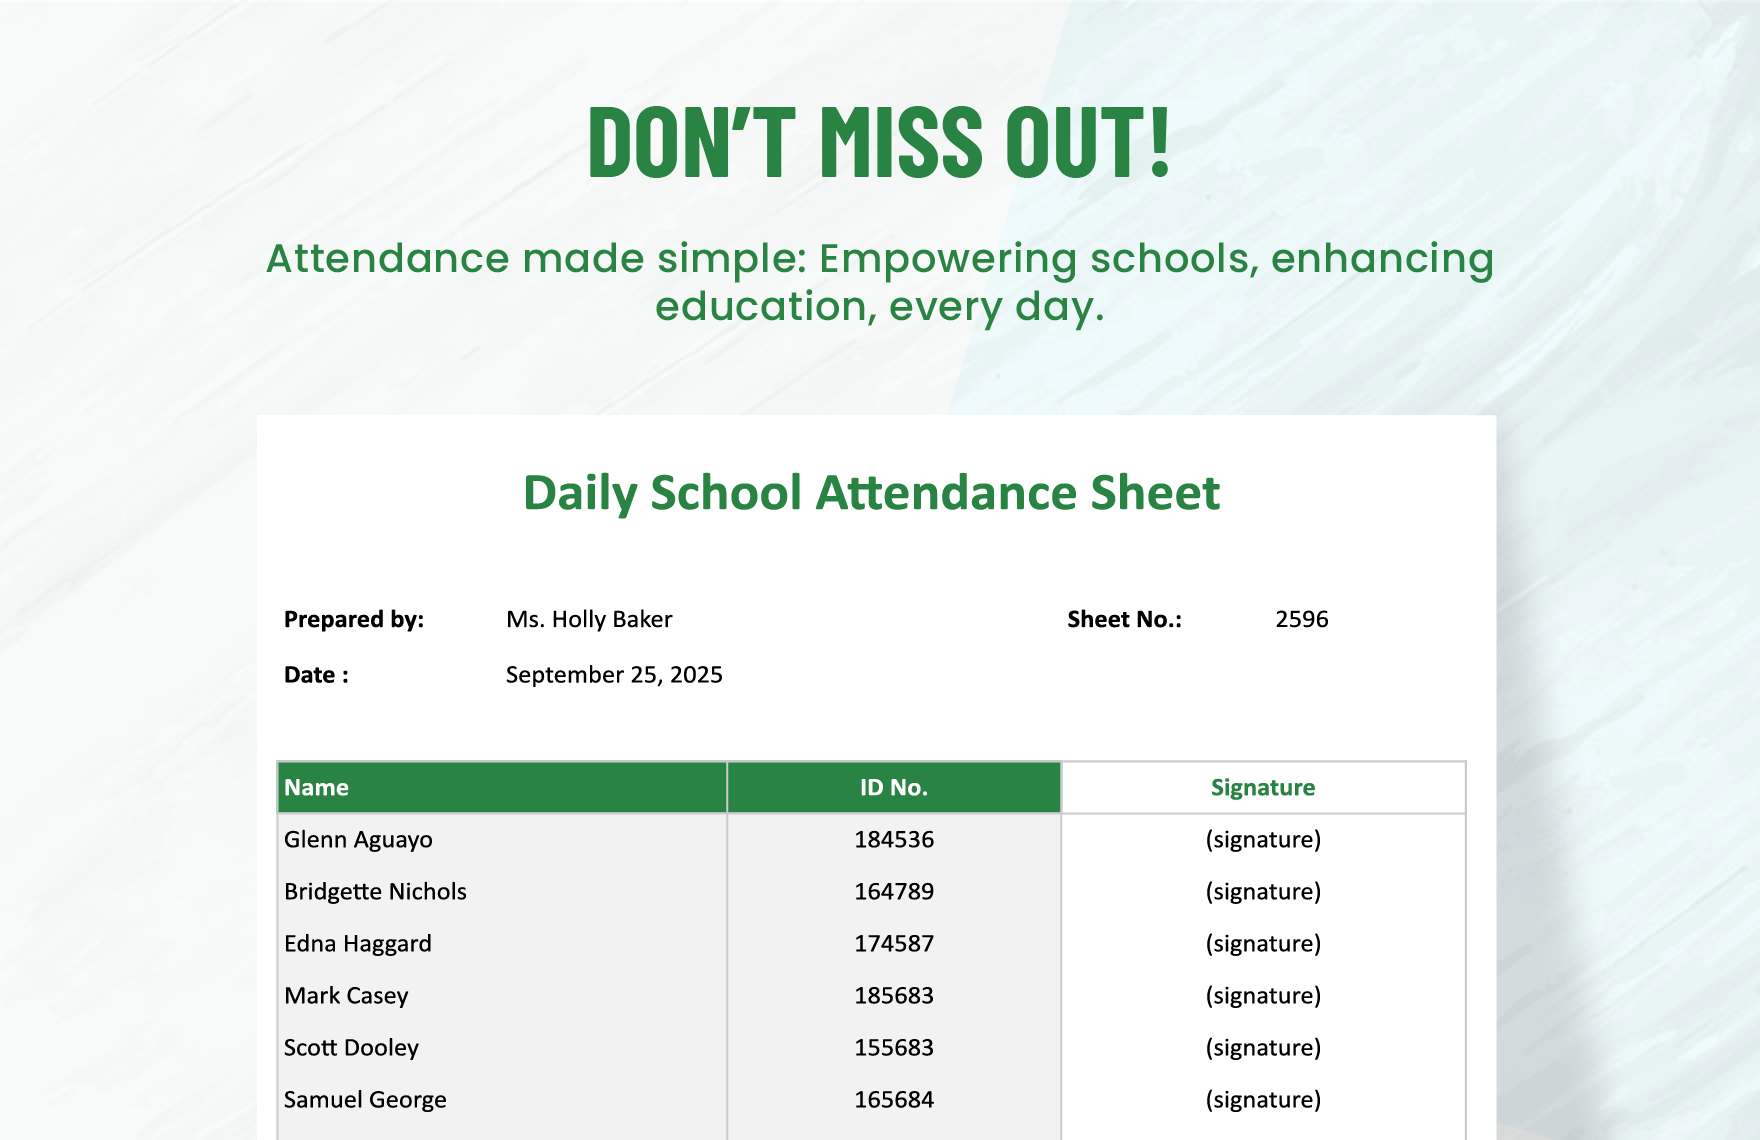 Daily School Attendance Sheet Template